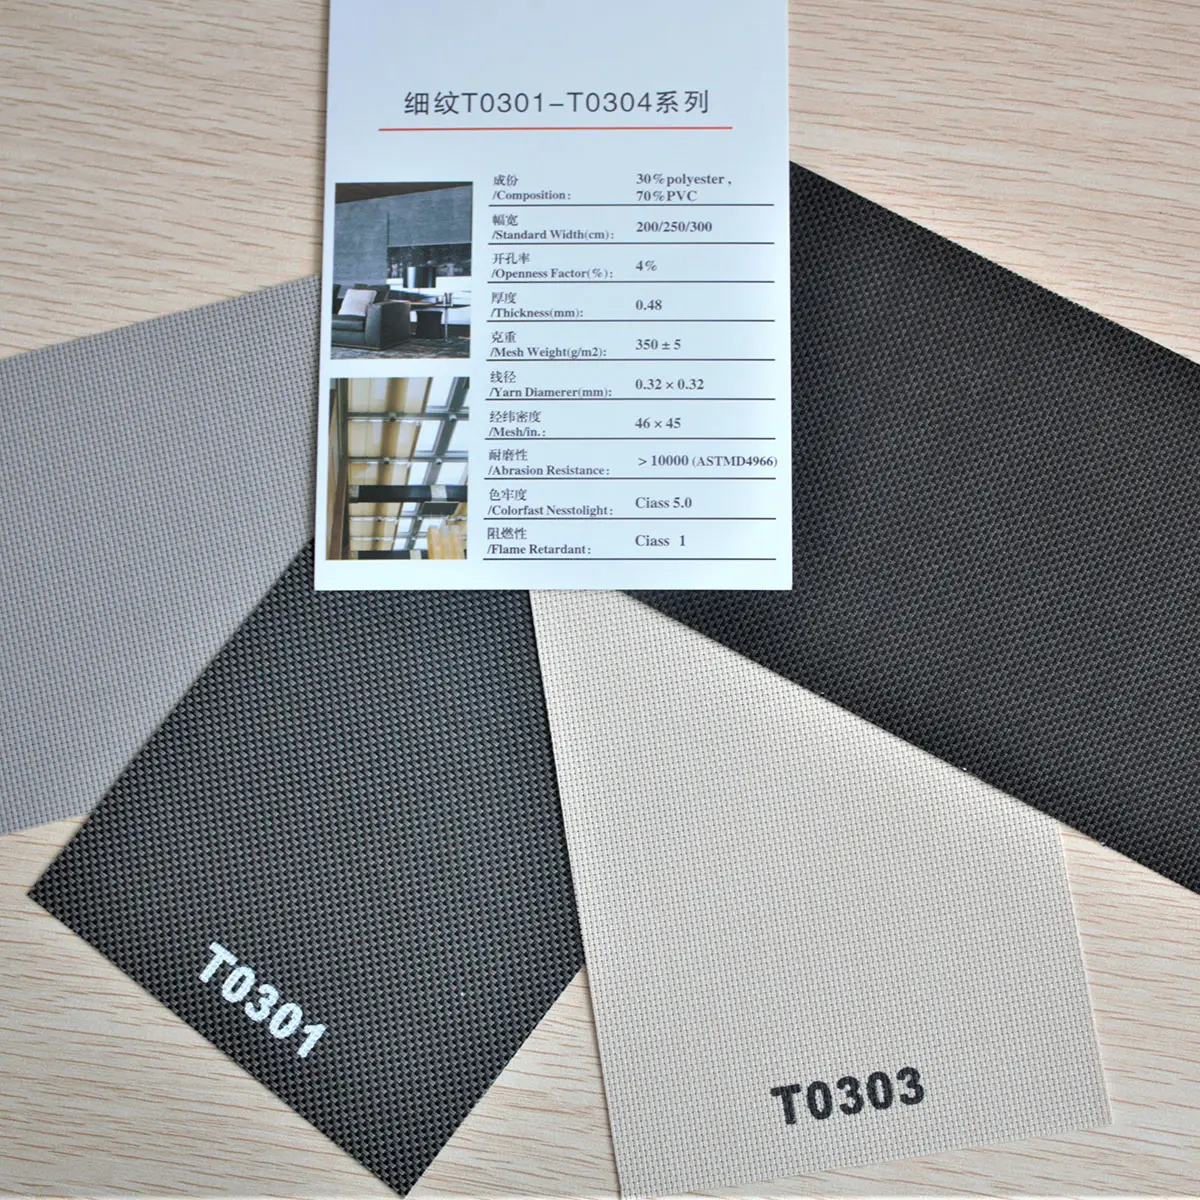 China Lieferanten qualität 30% Polyester 70% PVC Blackout Sonnenschutz Rollo Fenster Vorhang Stoff